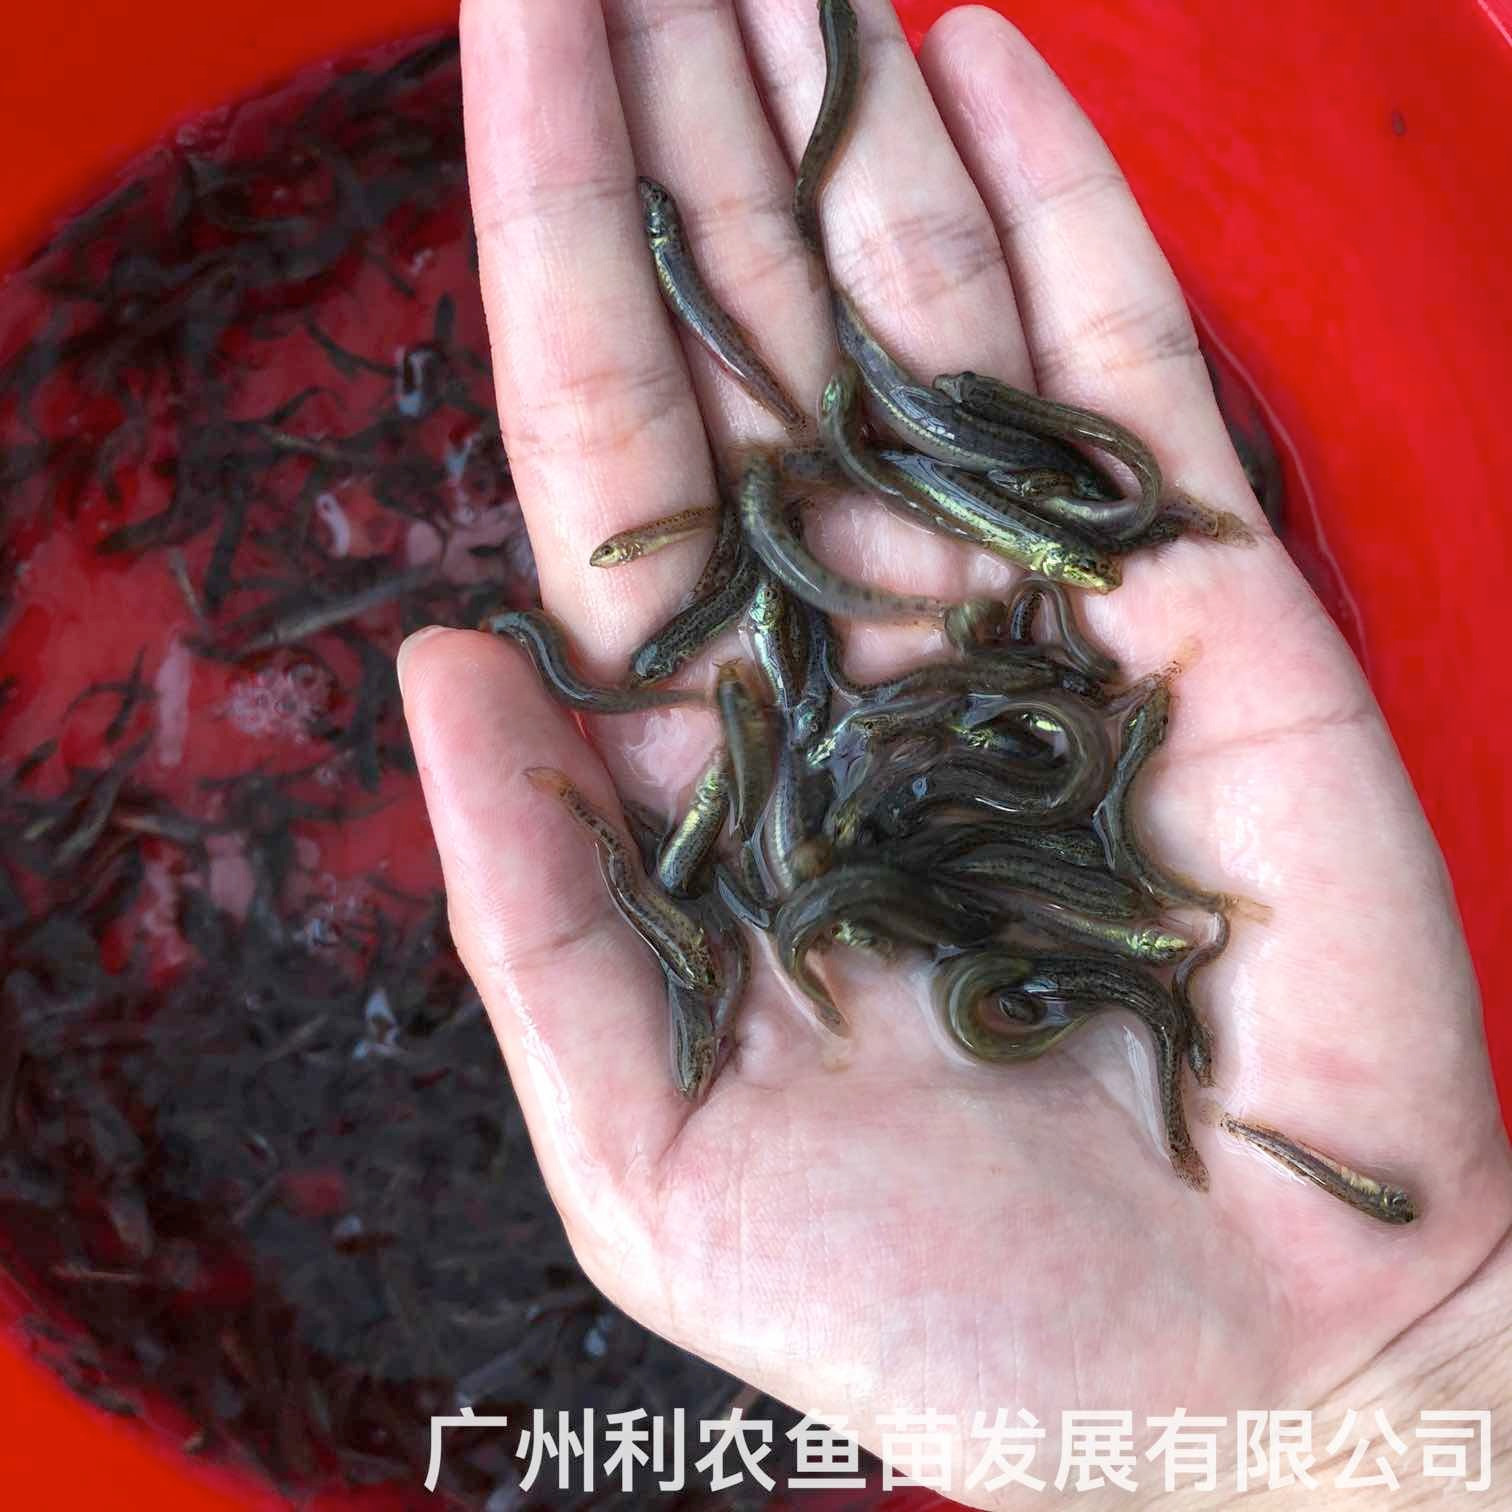 广西钦州台湾泥鳅苗广西防城港泥鳅鱼苗批发养殖场